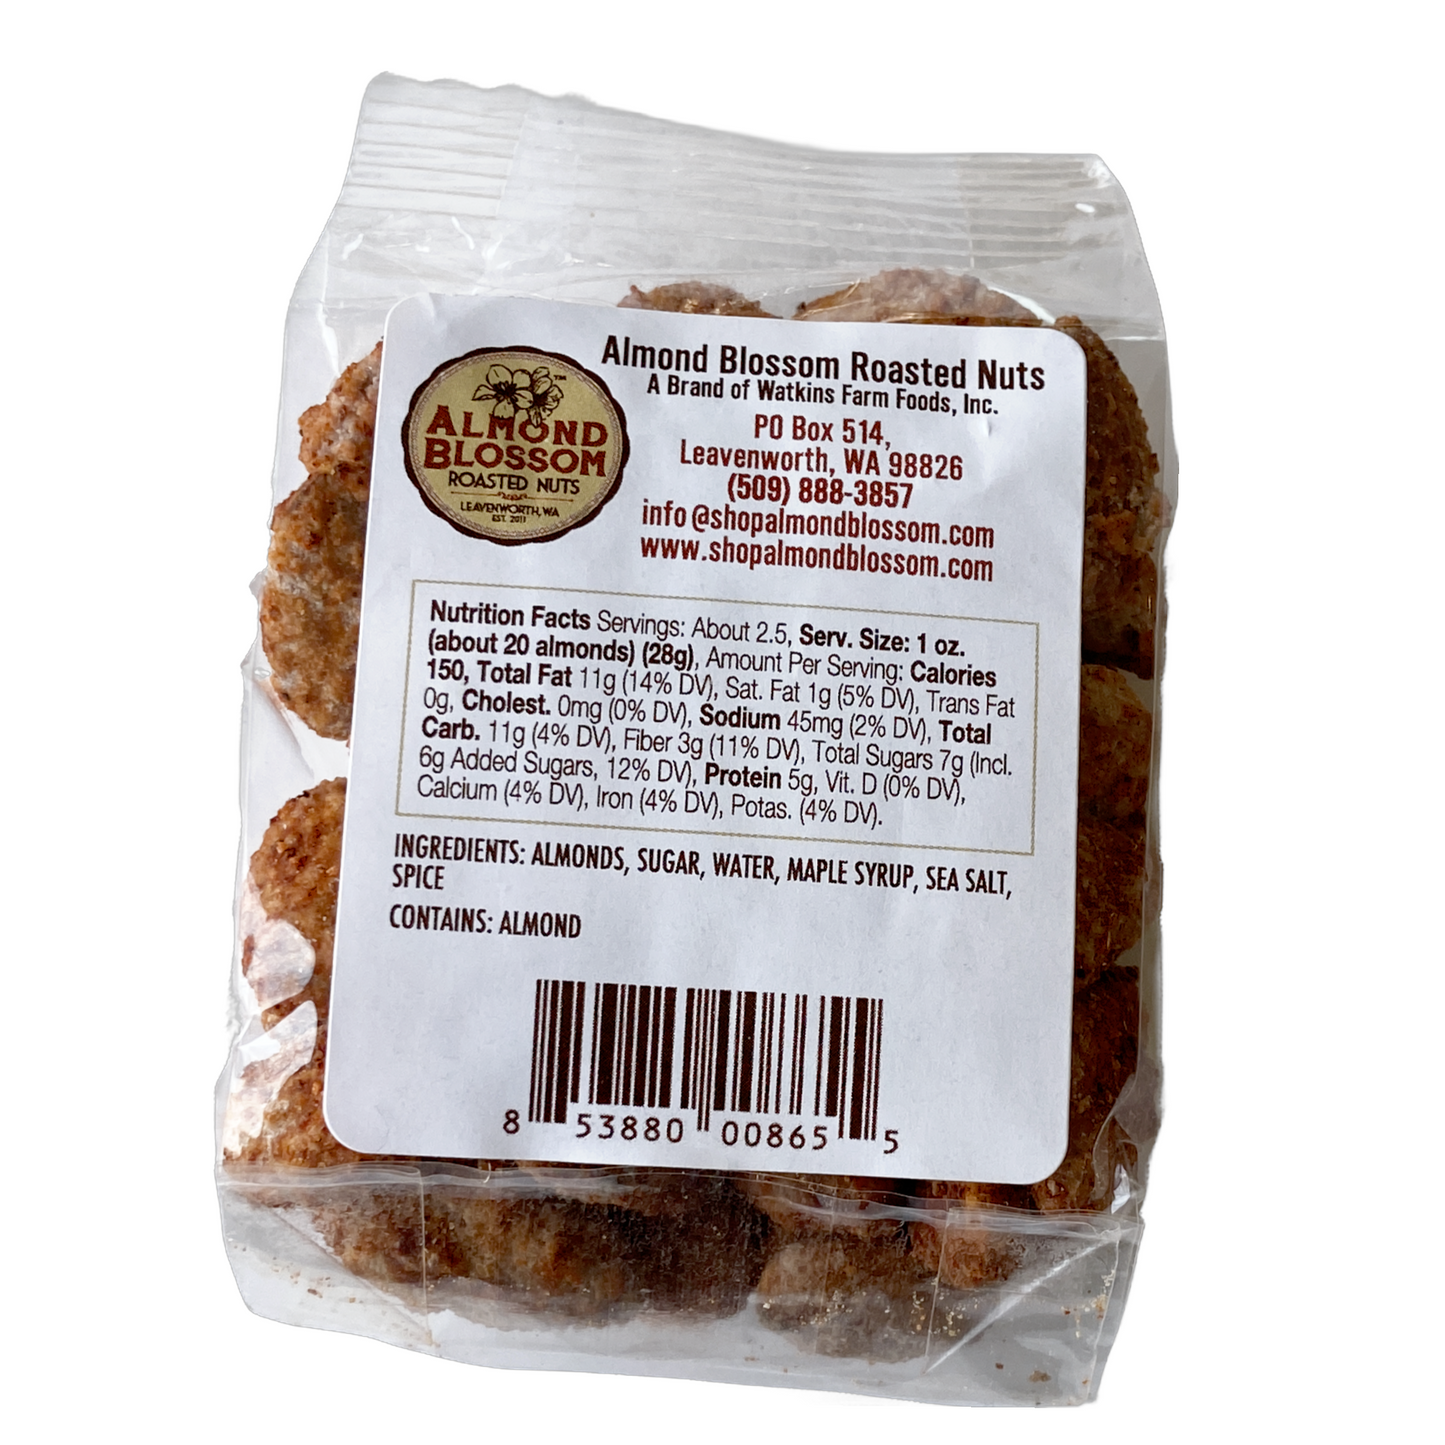 Maple Chipotle Almonds